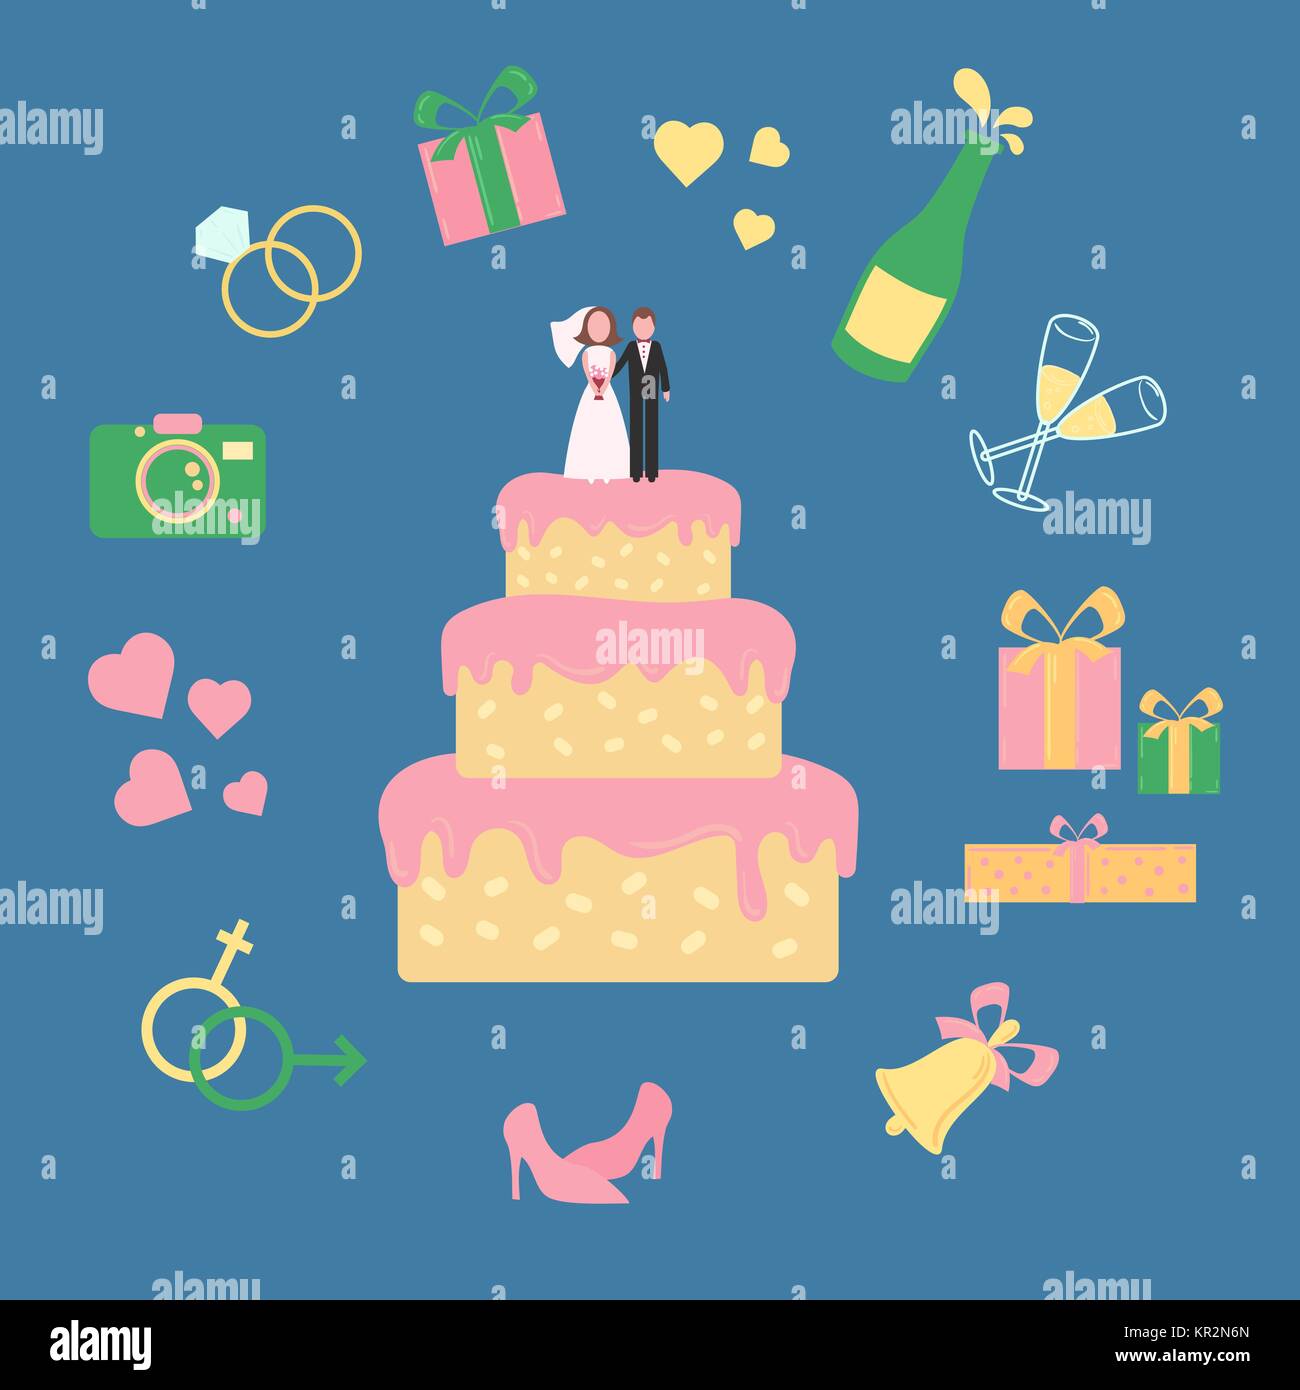 Hochzeit rosa Rahmspinat Kuchen mit statuette von Bräutigam und Braut. Icon Set inklusive Champagner Bell schuhe Herzen ringe Gläser, Geschenkverpackung und Kamera. Vektor Stock Vektor